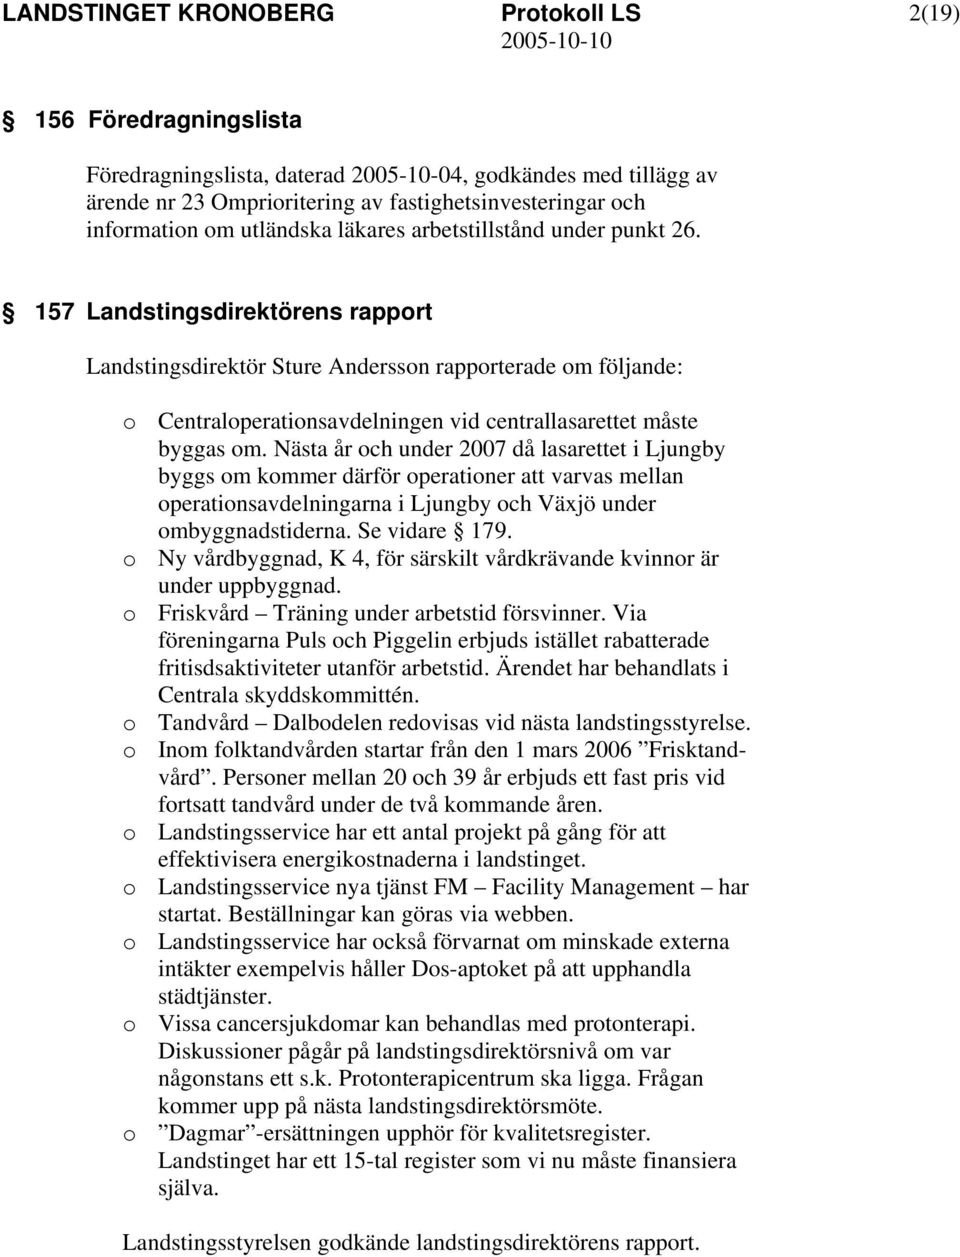 Nästa år och under 2007 då lasarettet i Ljungby byggs om kommer därför operationer att varvas mellan operationsavdelningarna i Ljungby och Växjö under ombyggnadstiderna. Se vidare 179.